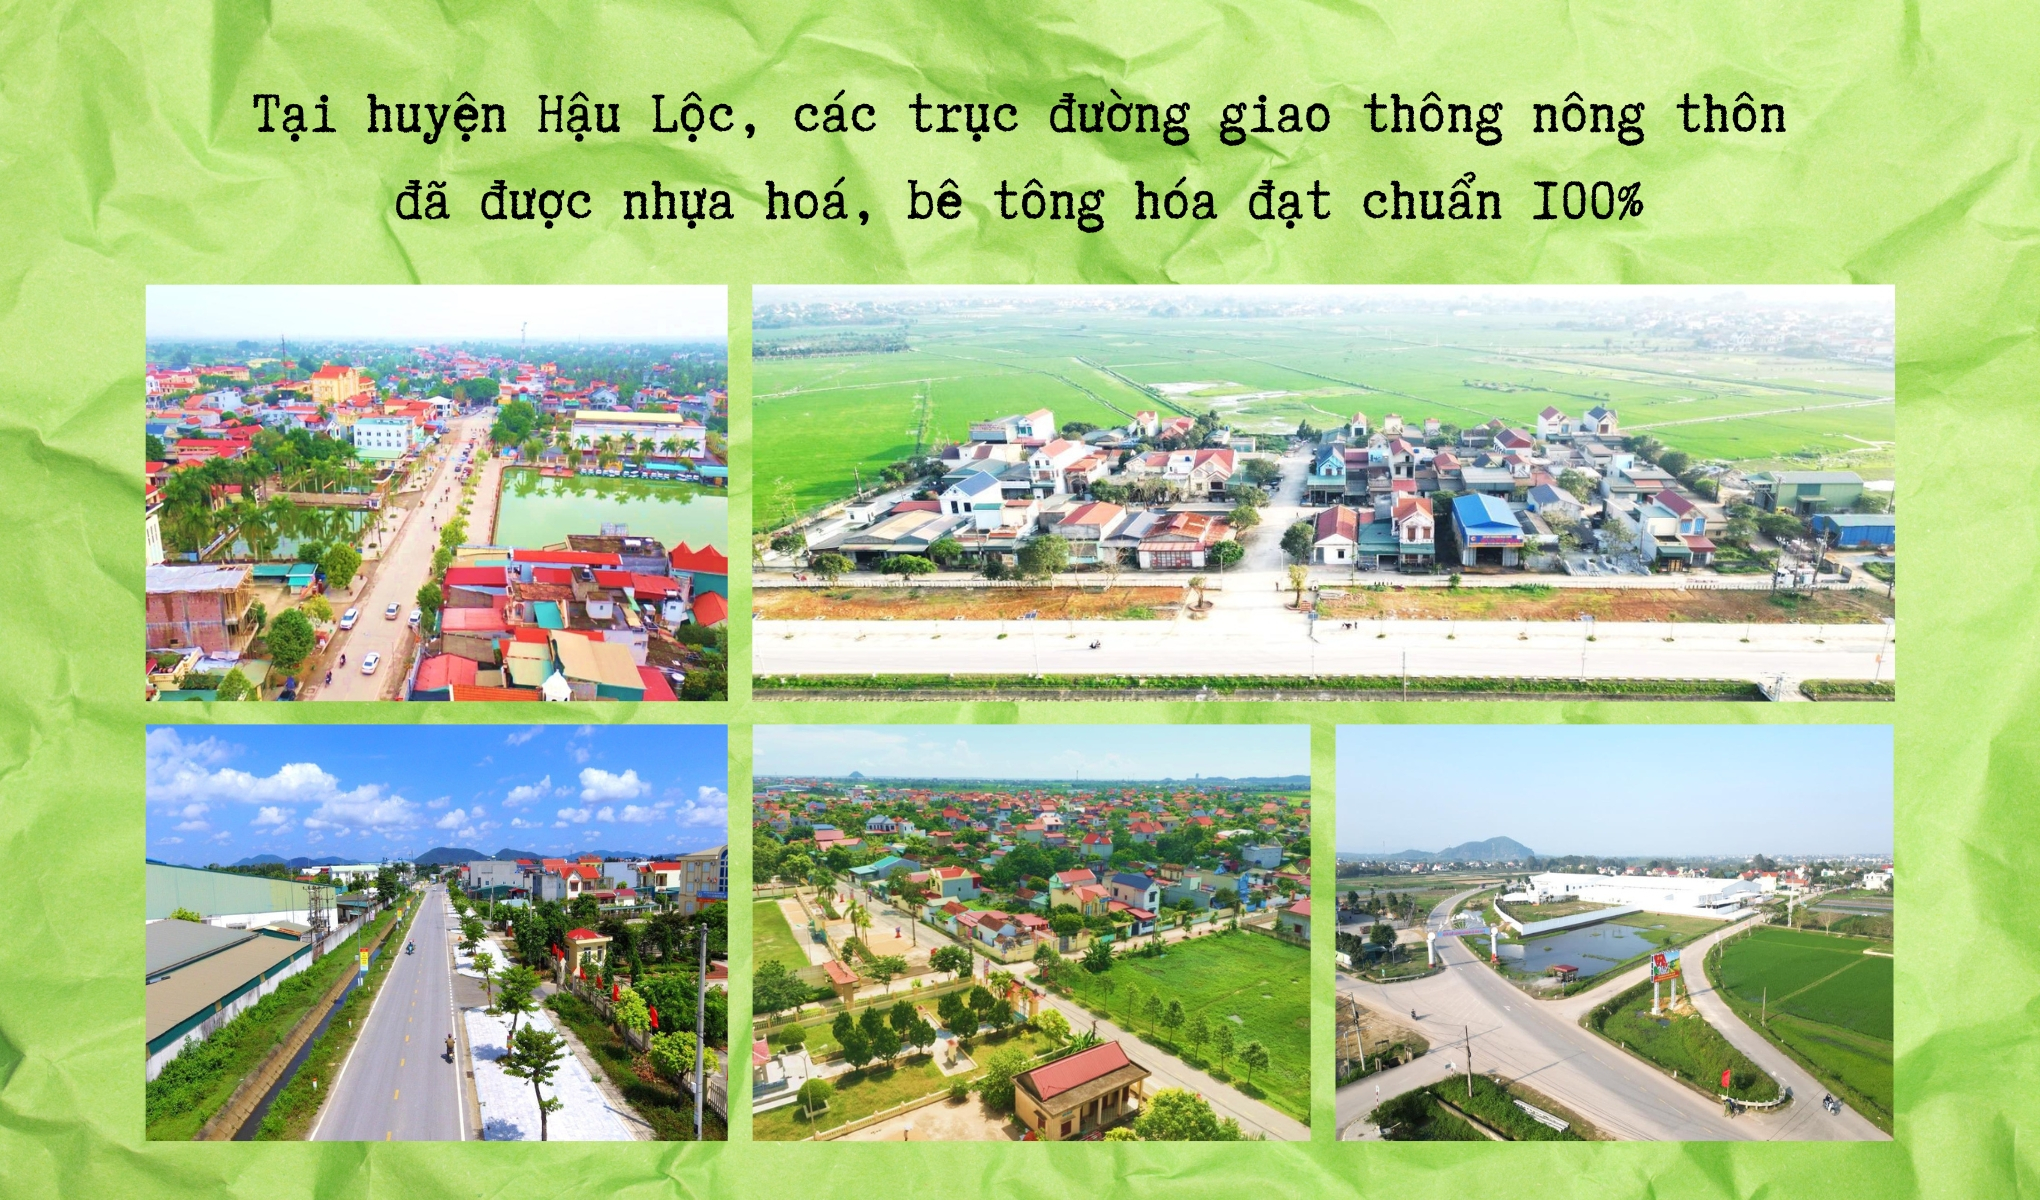 Hành trình xây dựng nông thôn mới tại huyện Hậu Lộc